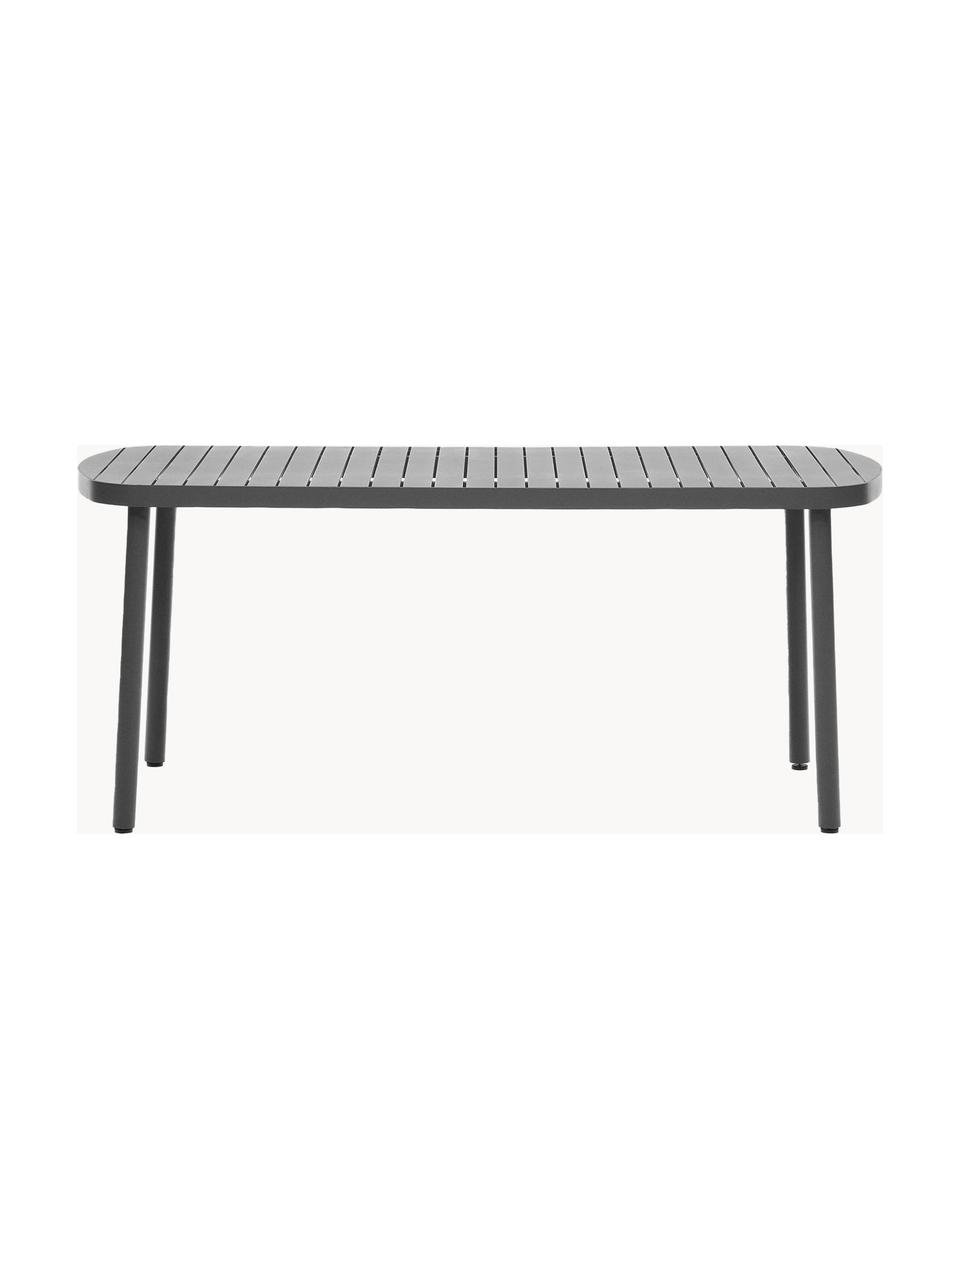 Stół ogrodowy z metalu Joncols, Aluminium malowane proszkowo, Antracytowy, S 180 x G 90 cm